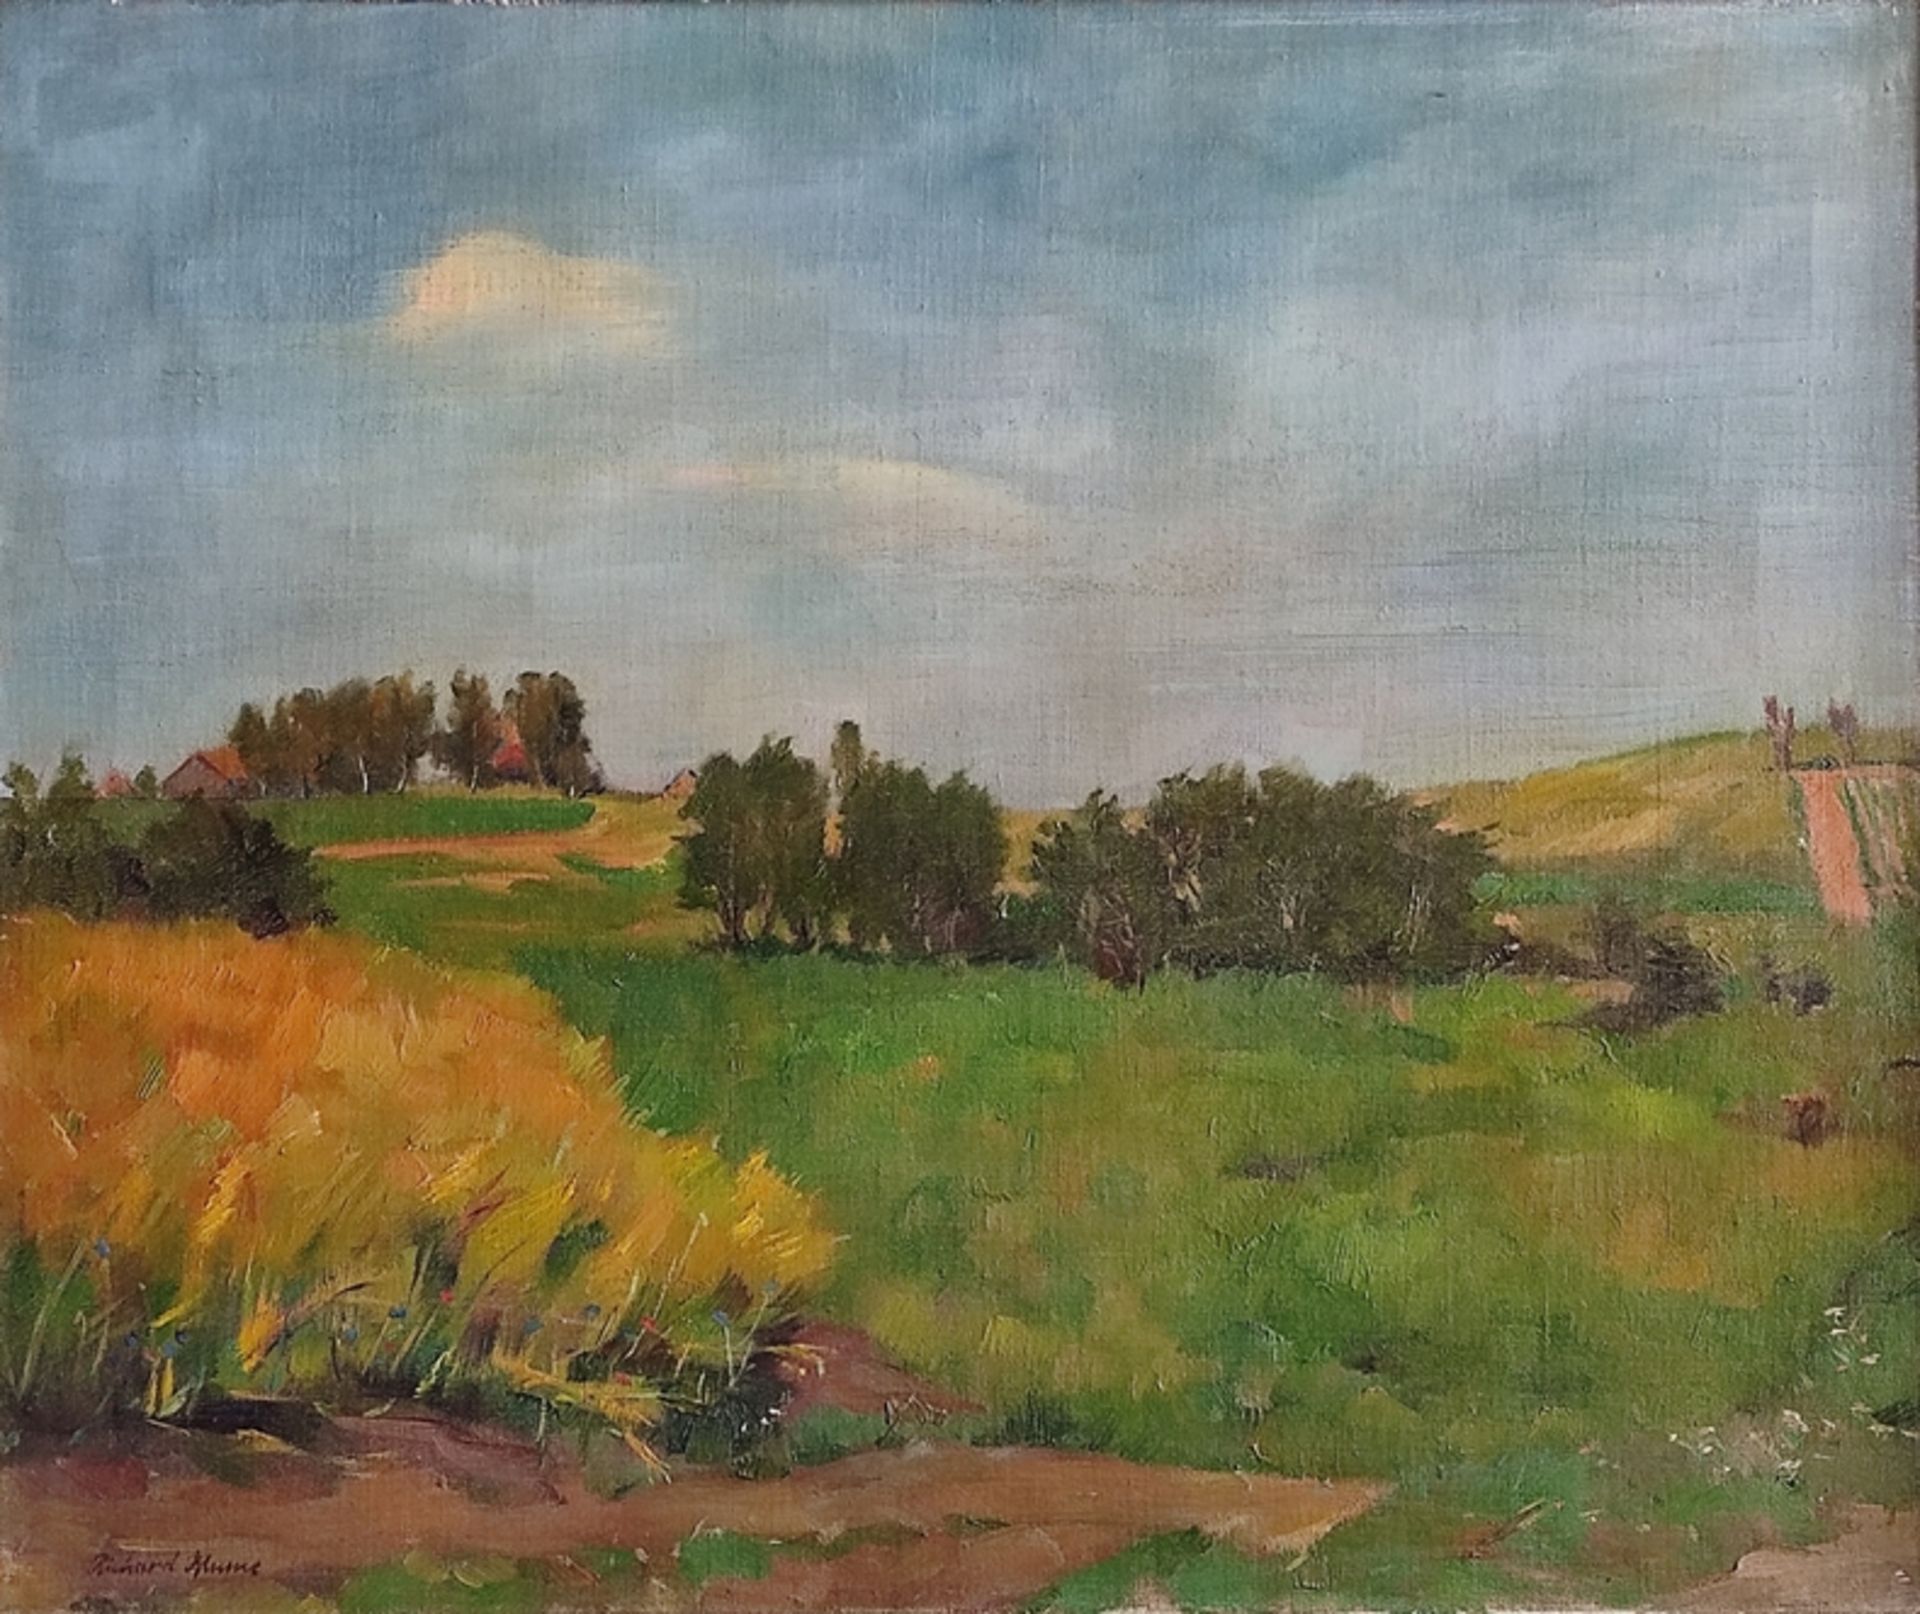 Blume, Richard (1891 - 1943) "Summer Landscape", with wide blue sky, signed lower left, oil on canv